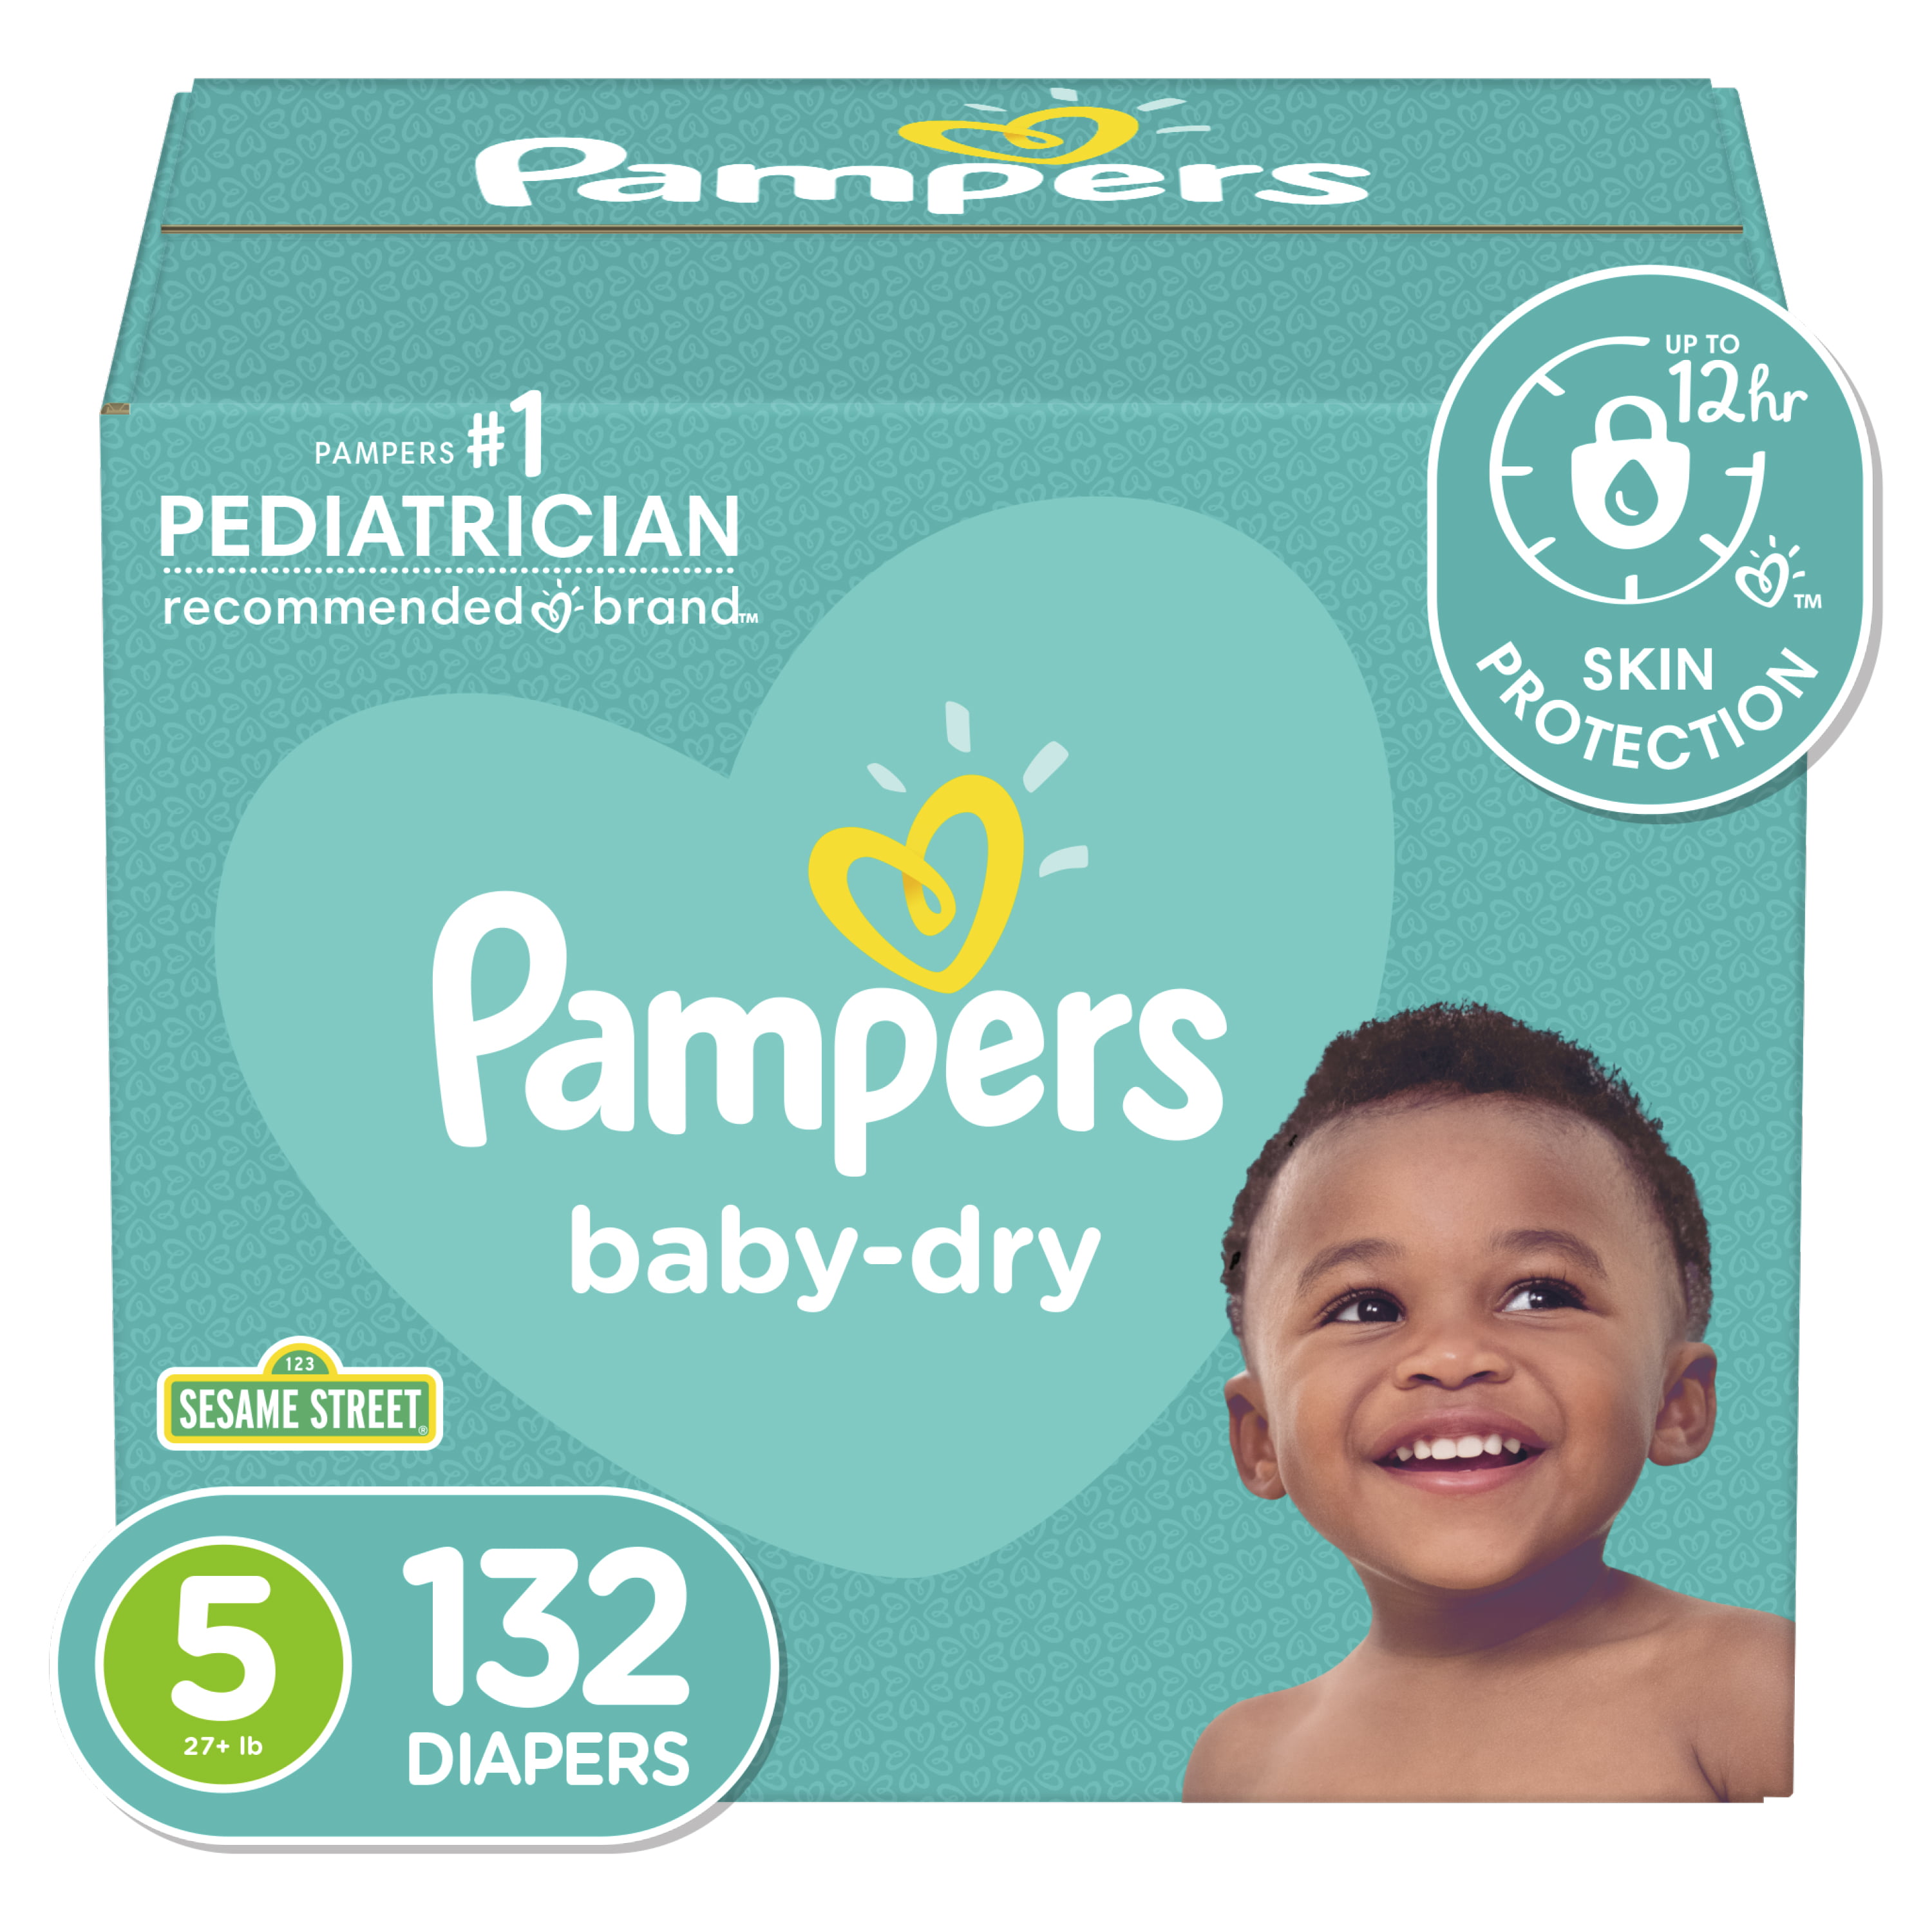 Fluisteren Vernietigen trui Pampers Baby-Dry Extra Protection Diapers, Size 5, 132 Count - Walmart.com